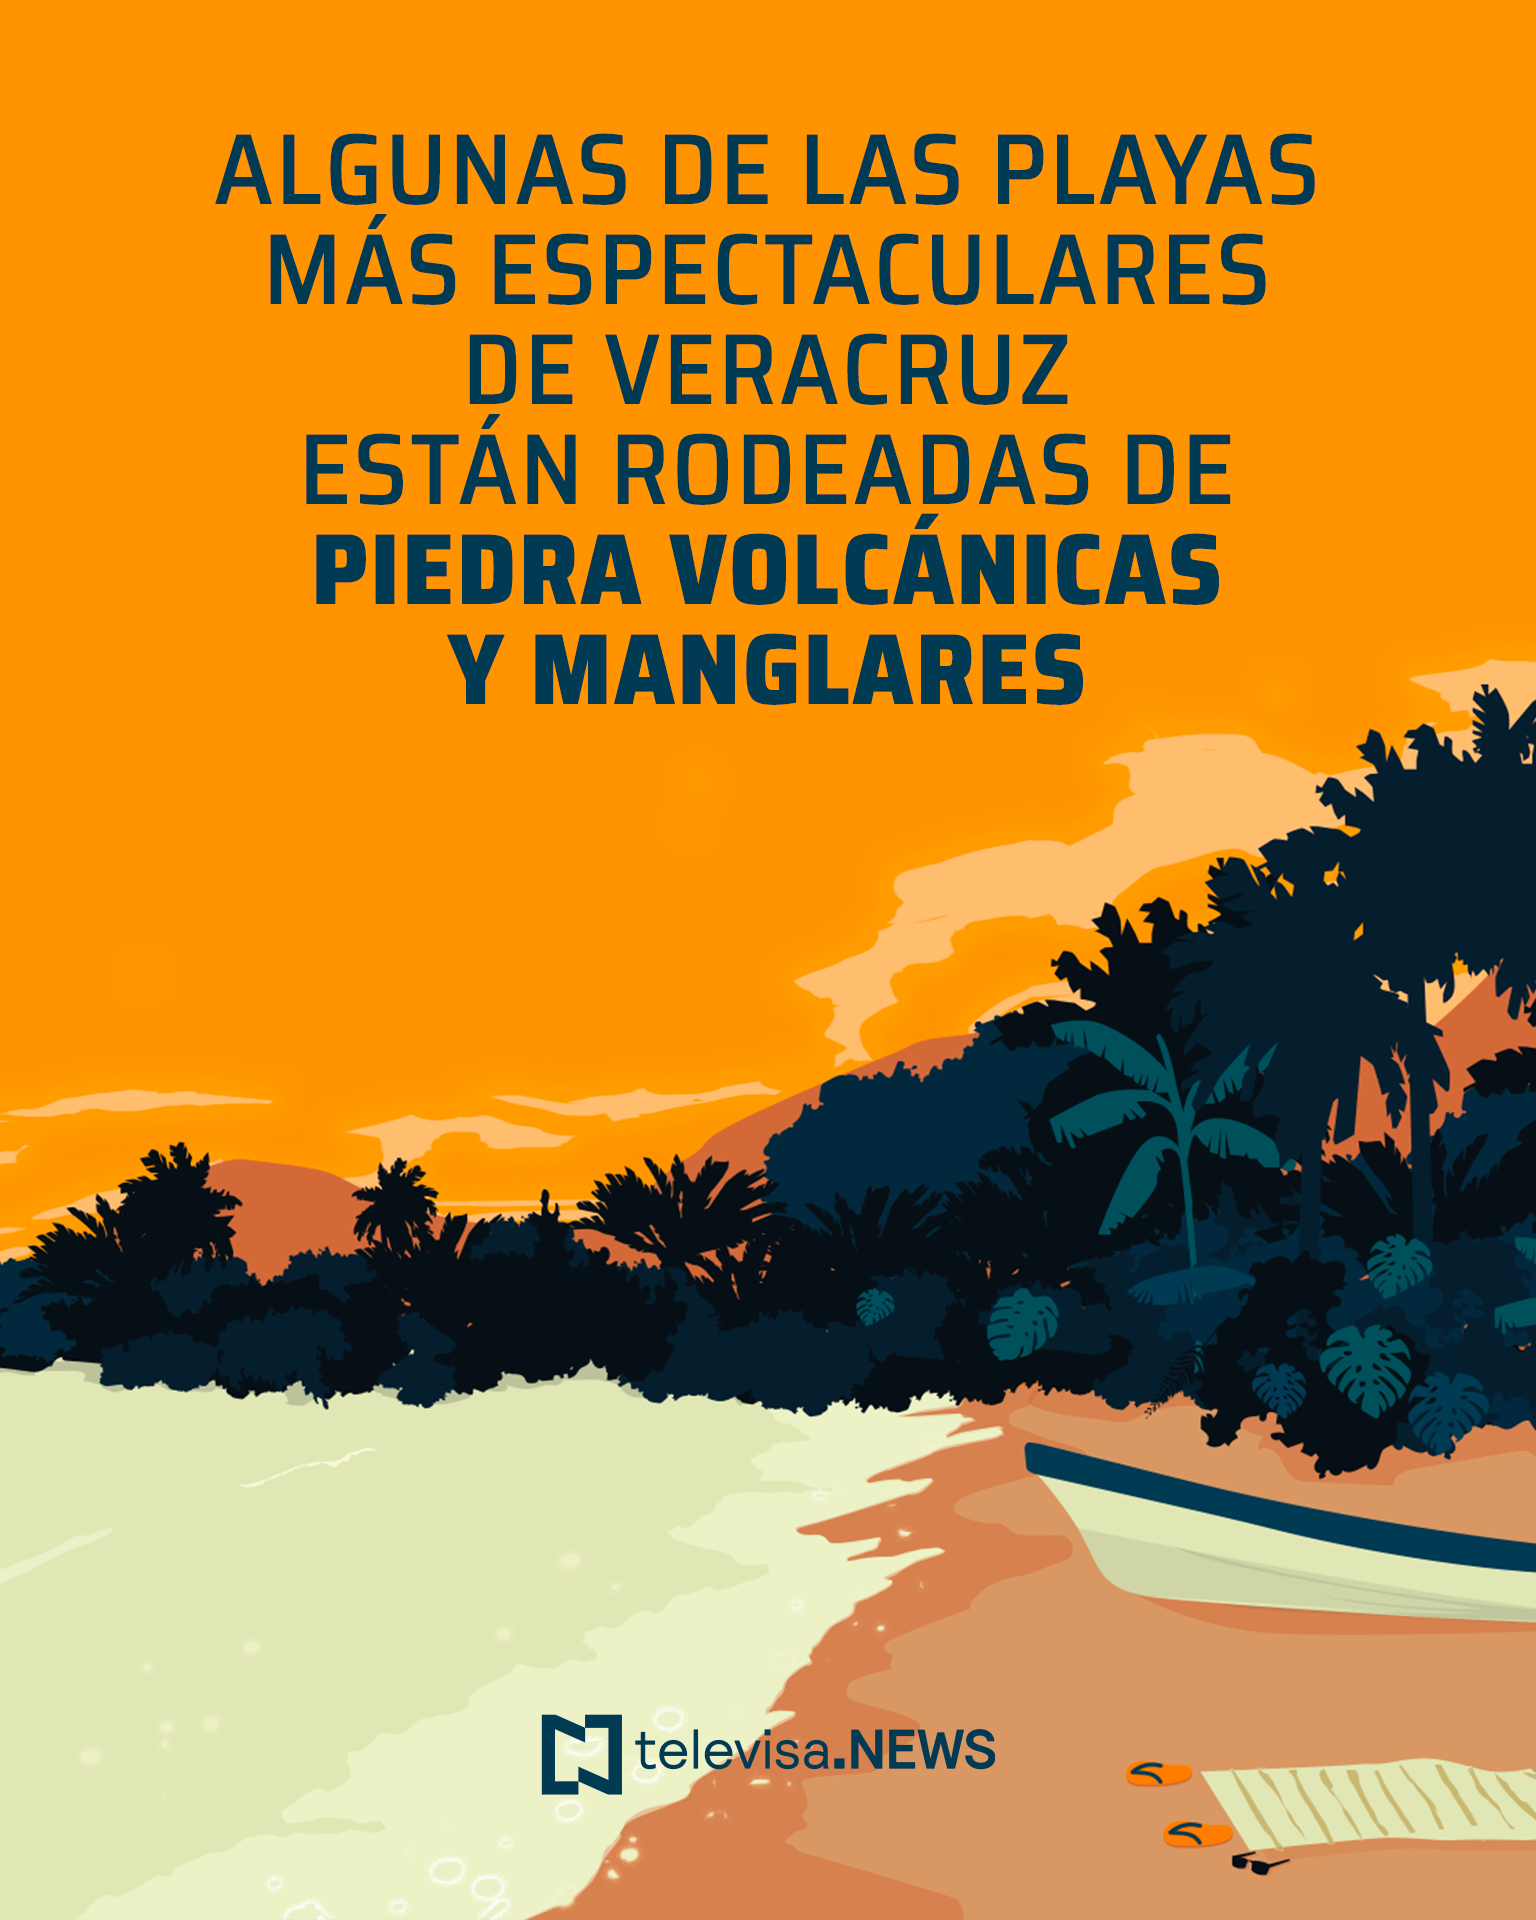 26/07/2019 Ilustración de las playas de Veracruz